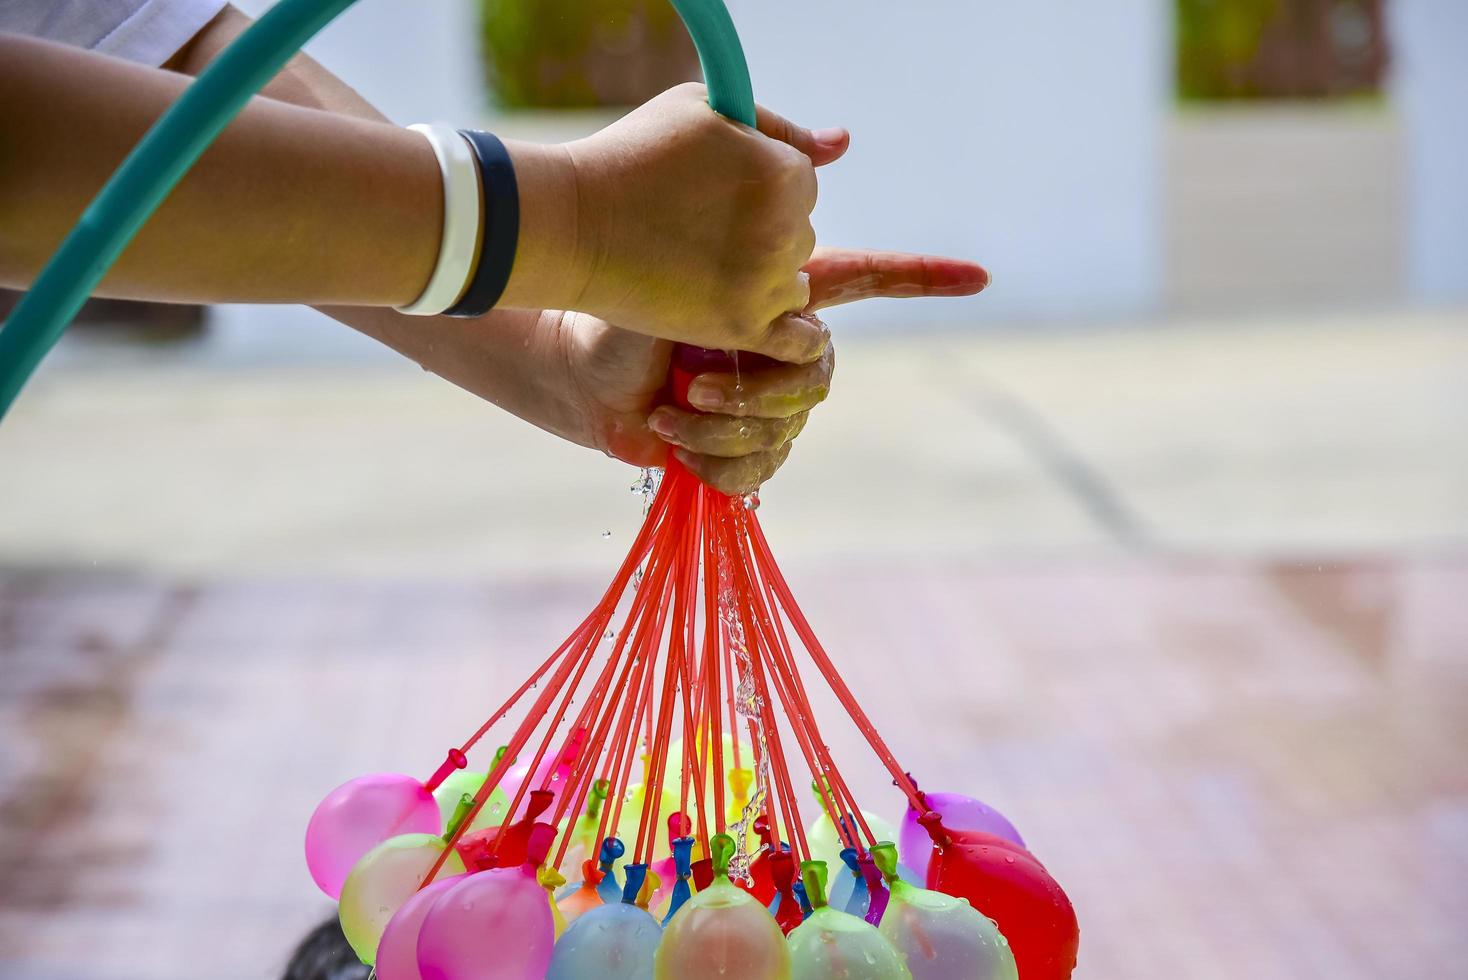 balões de água coloridos foto